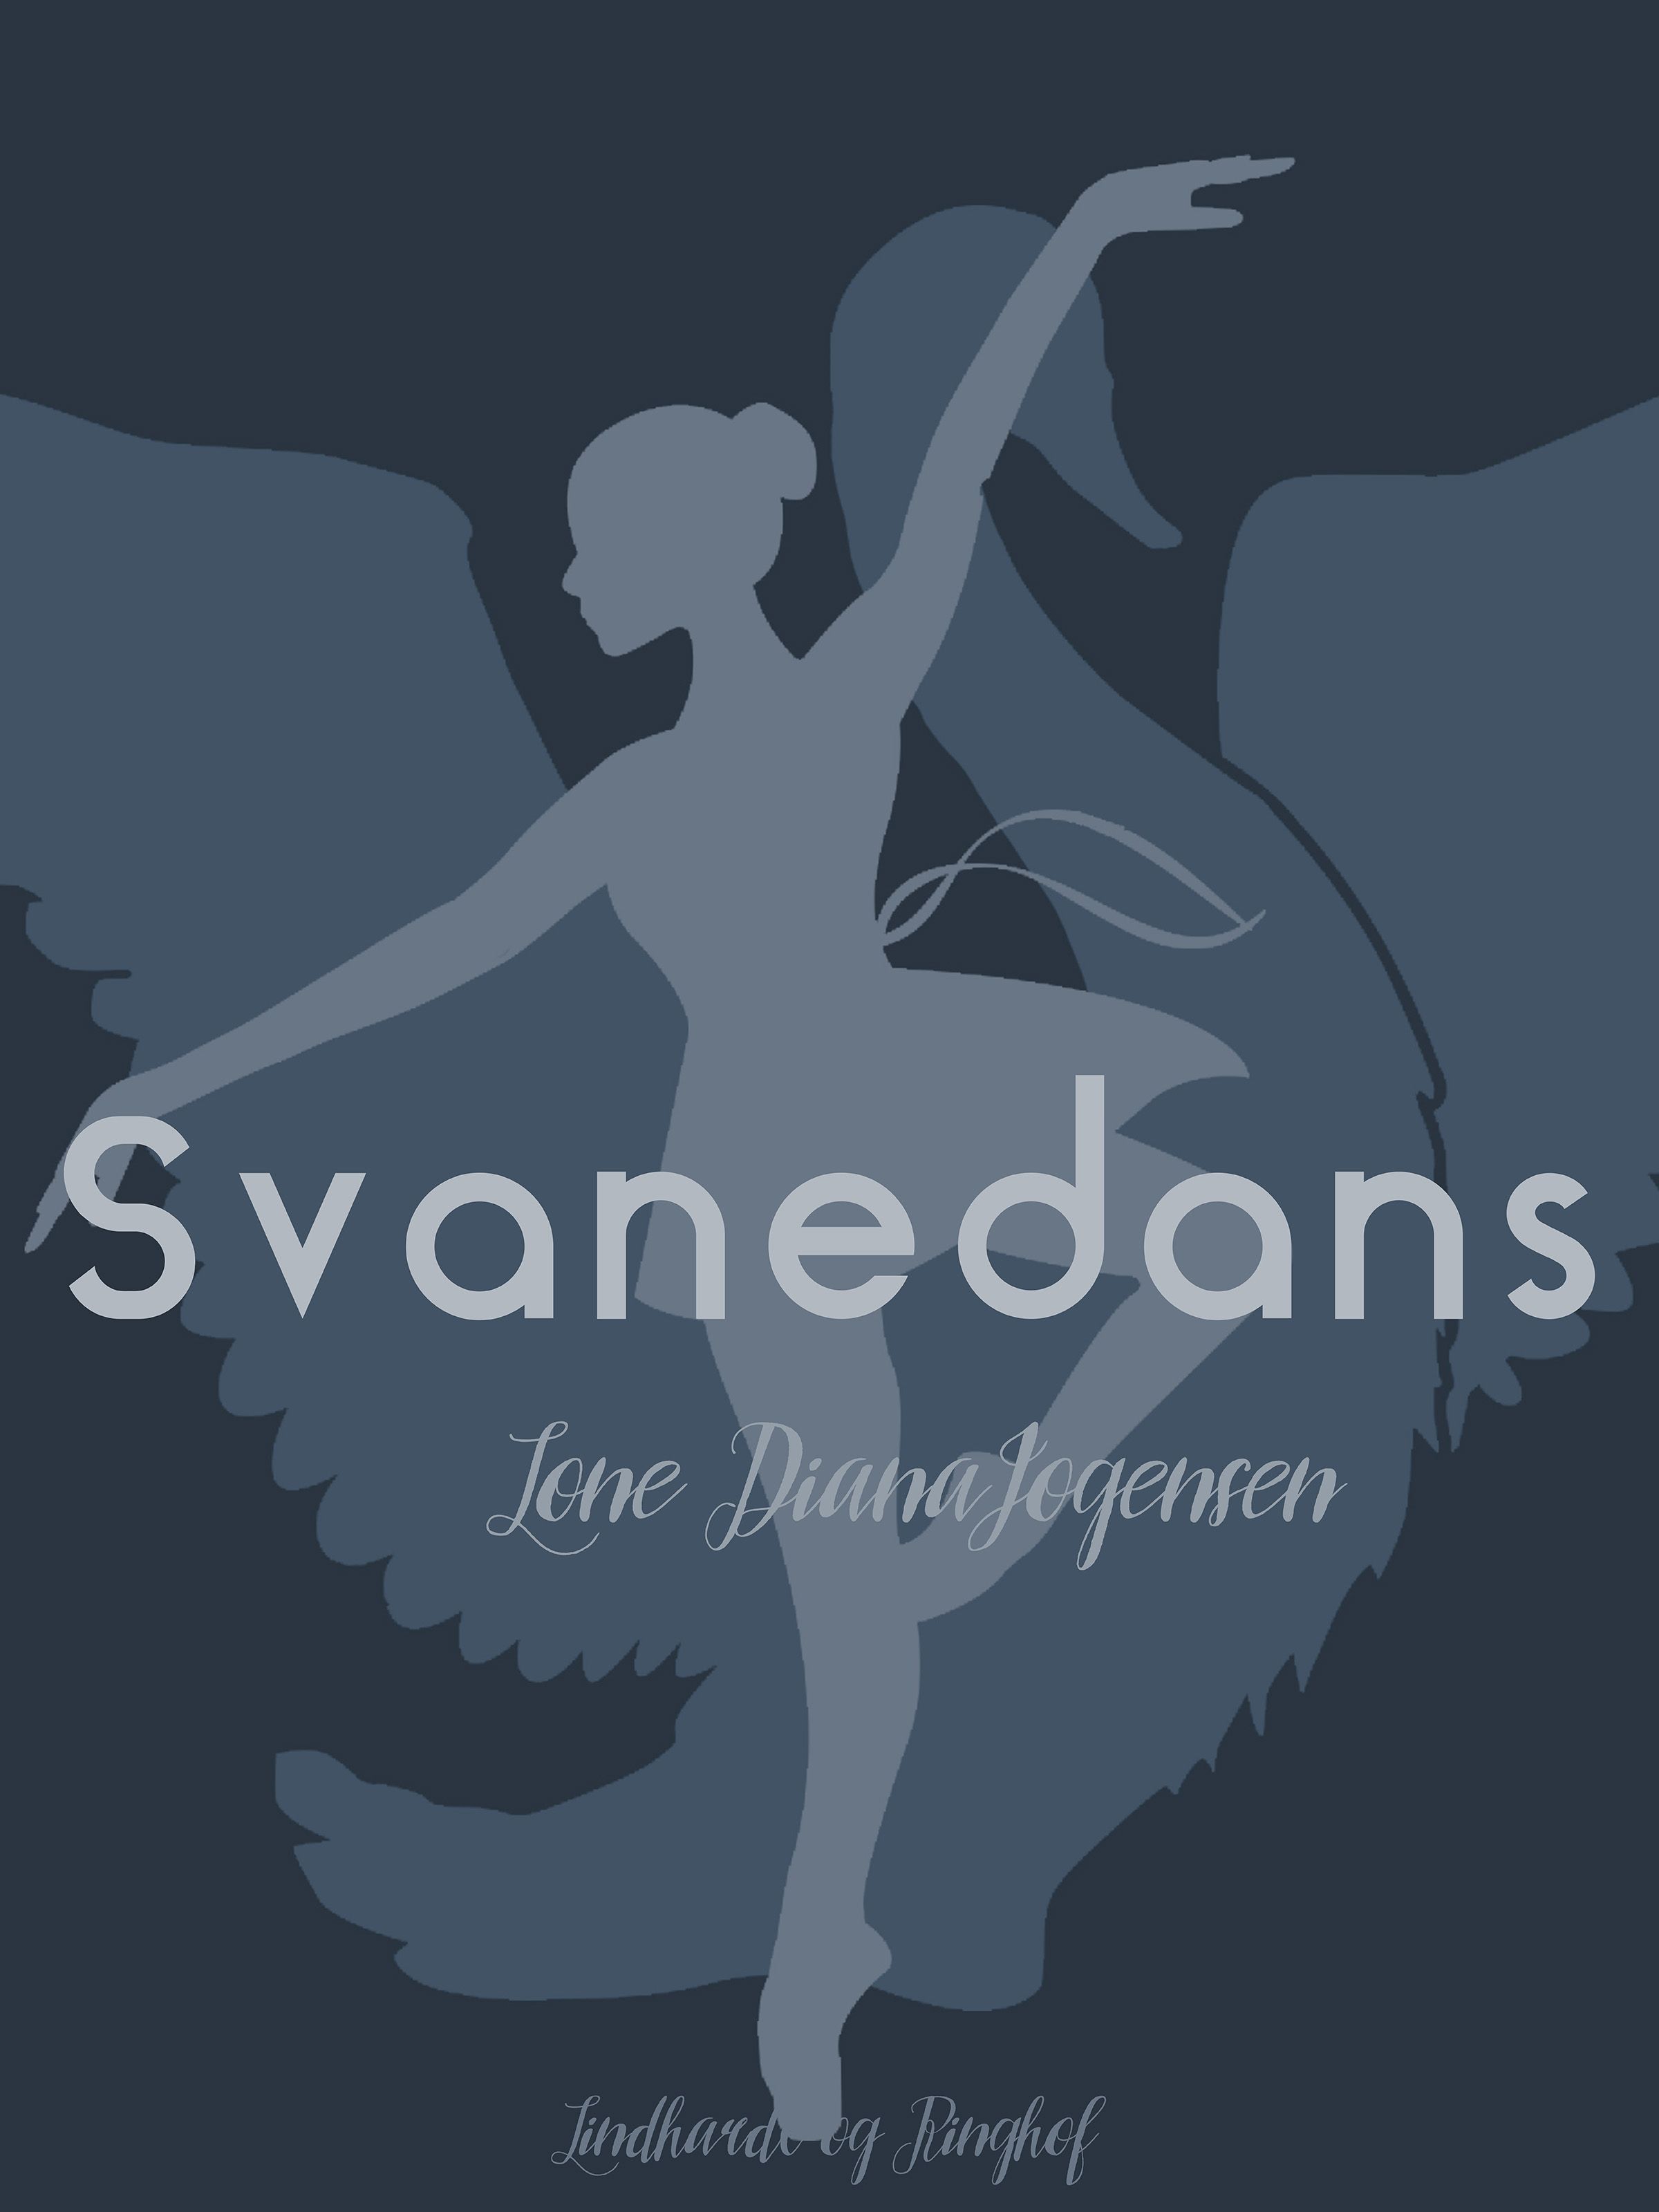 Svanedans, eBook by Lone Diana Jørgensen